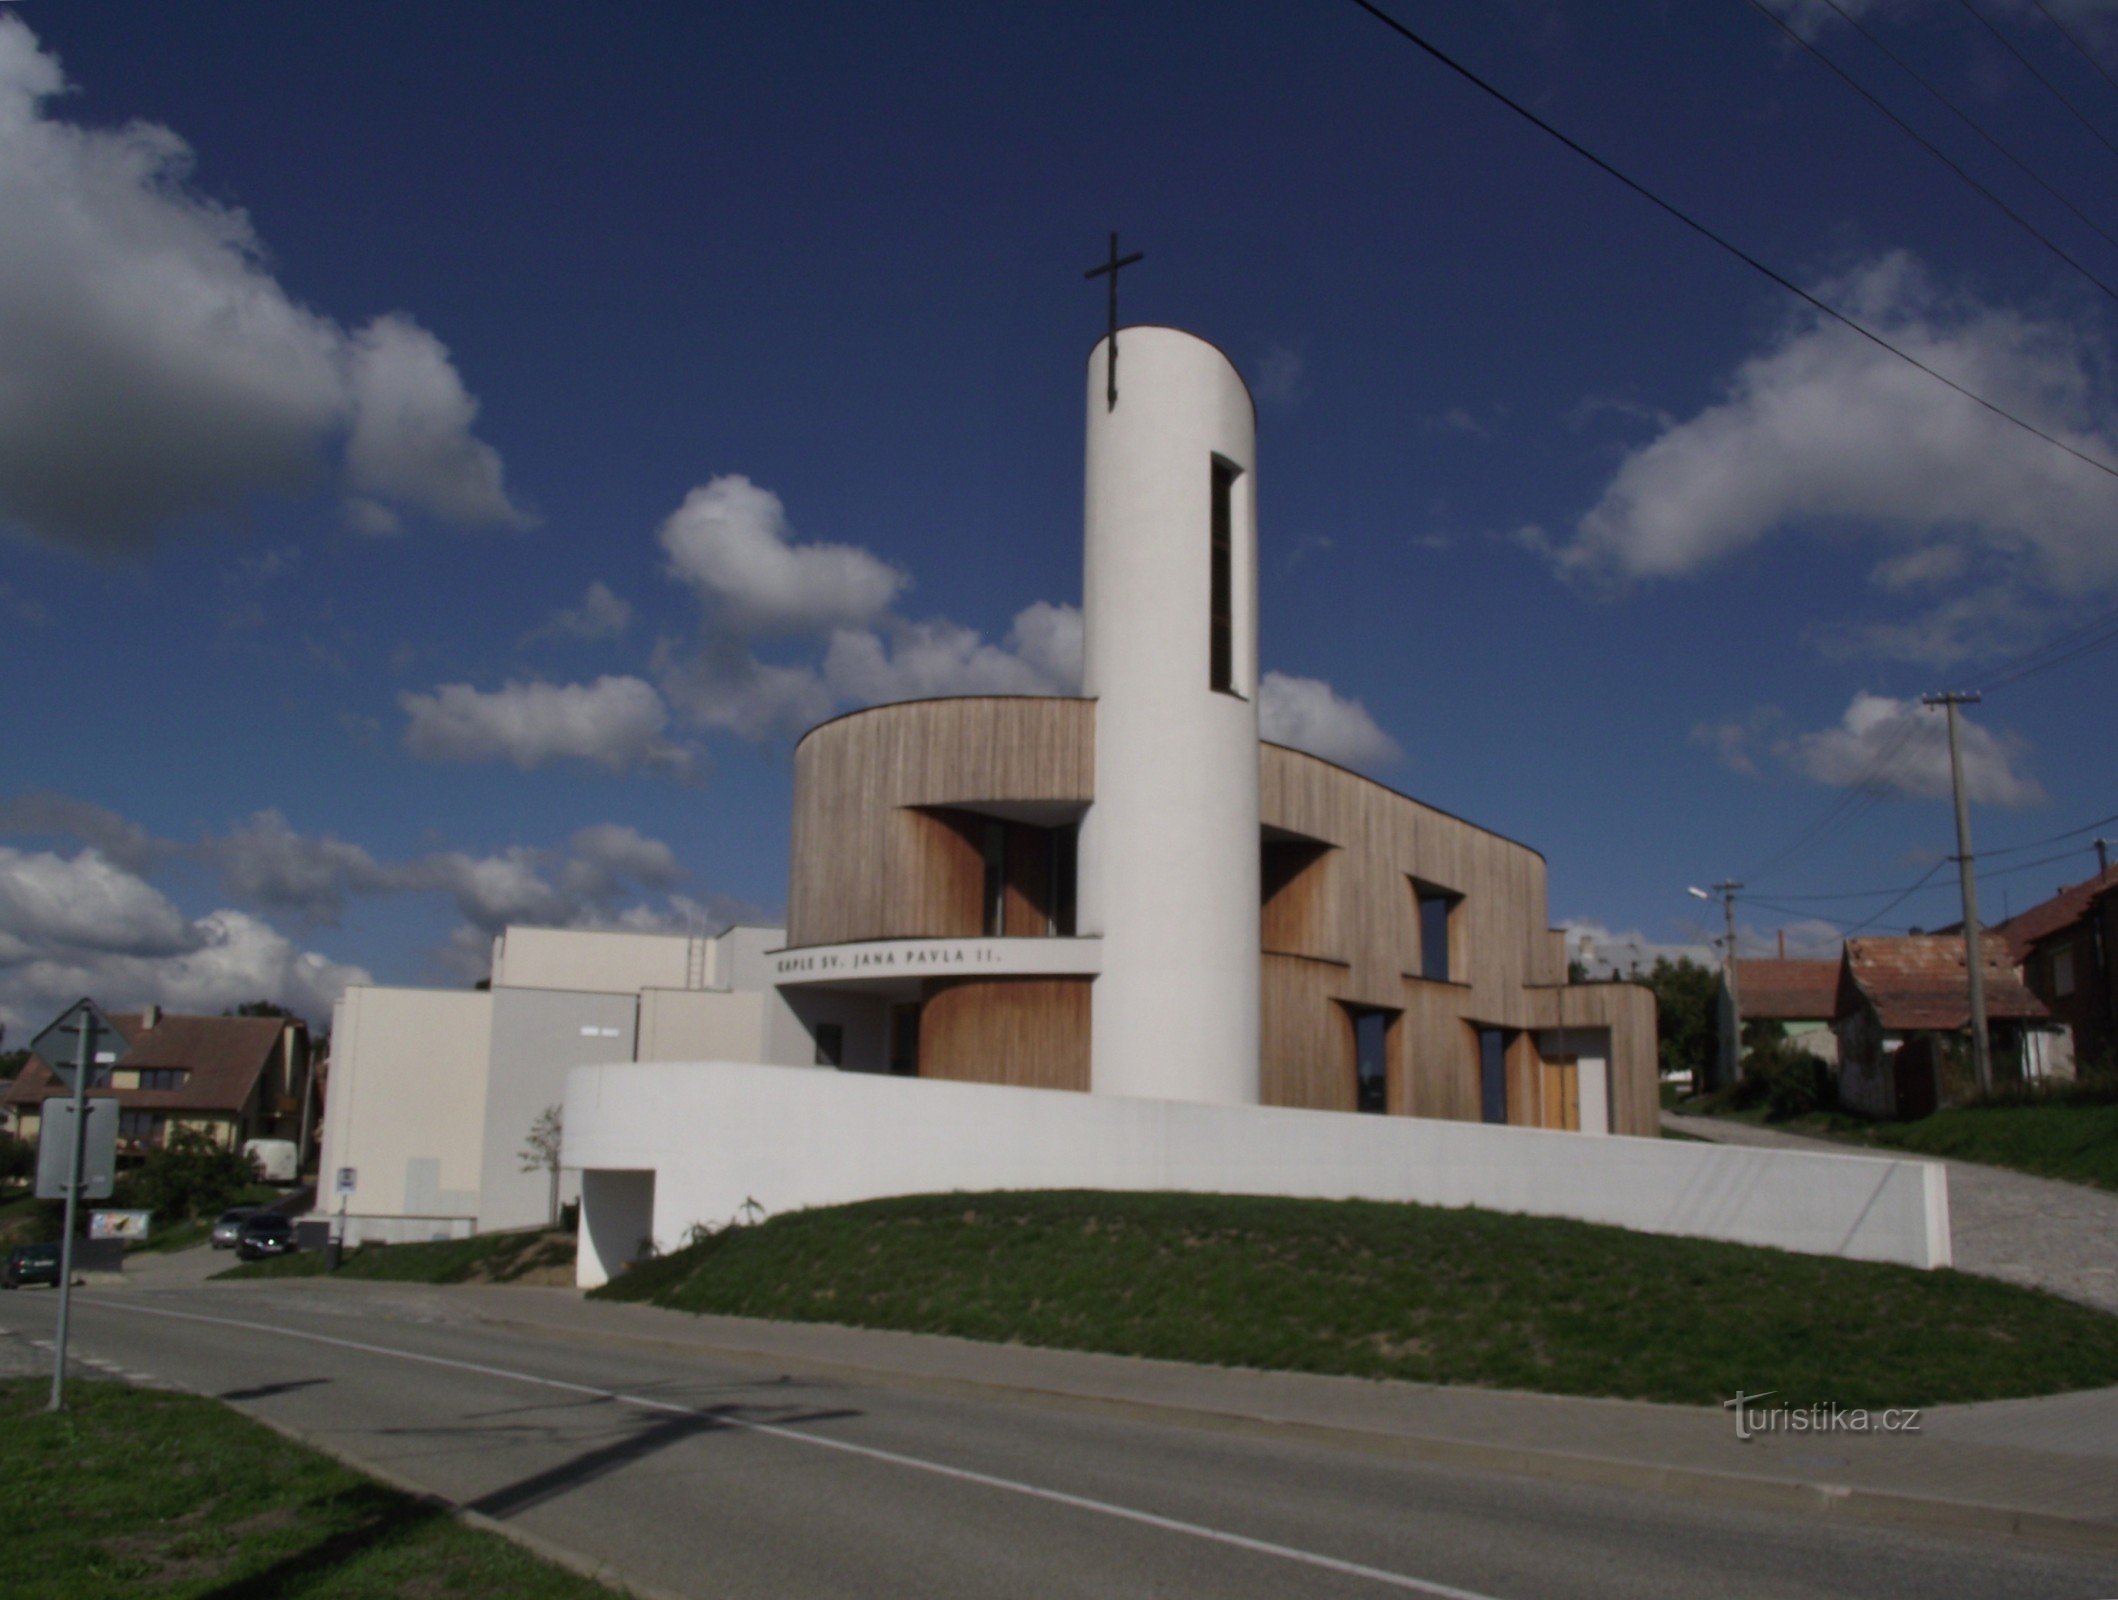 Bukovany (nära Kyjov) – kapellet St. Johannes Paulus II